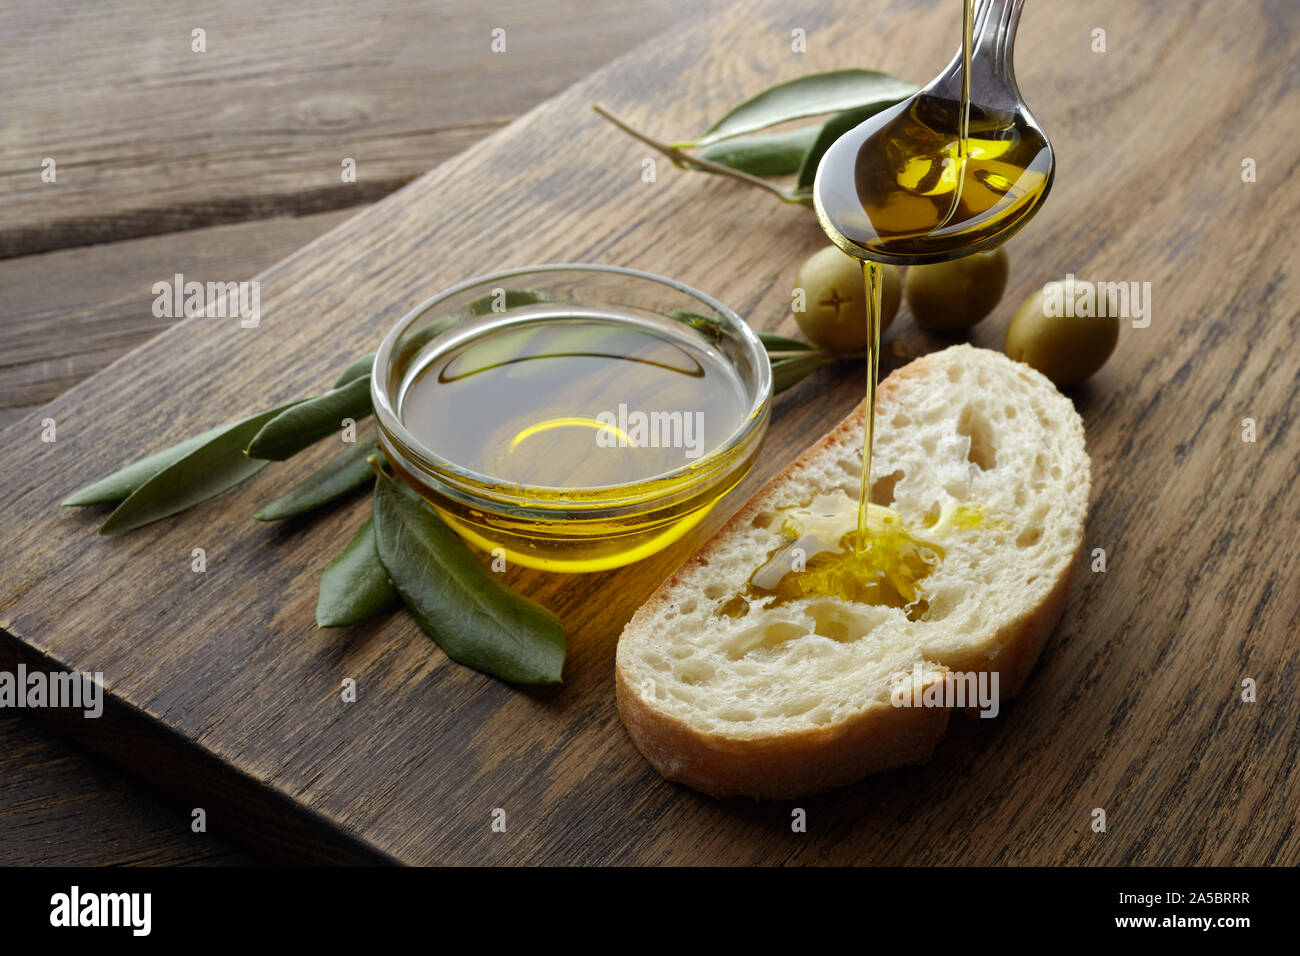 Tranche de pain assaisonné d'huile d'olive sur fond de bois Banque D'Images